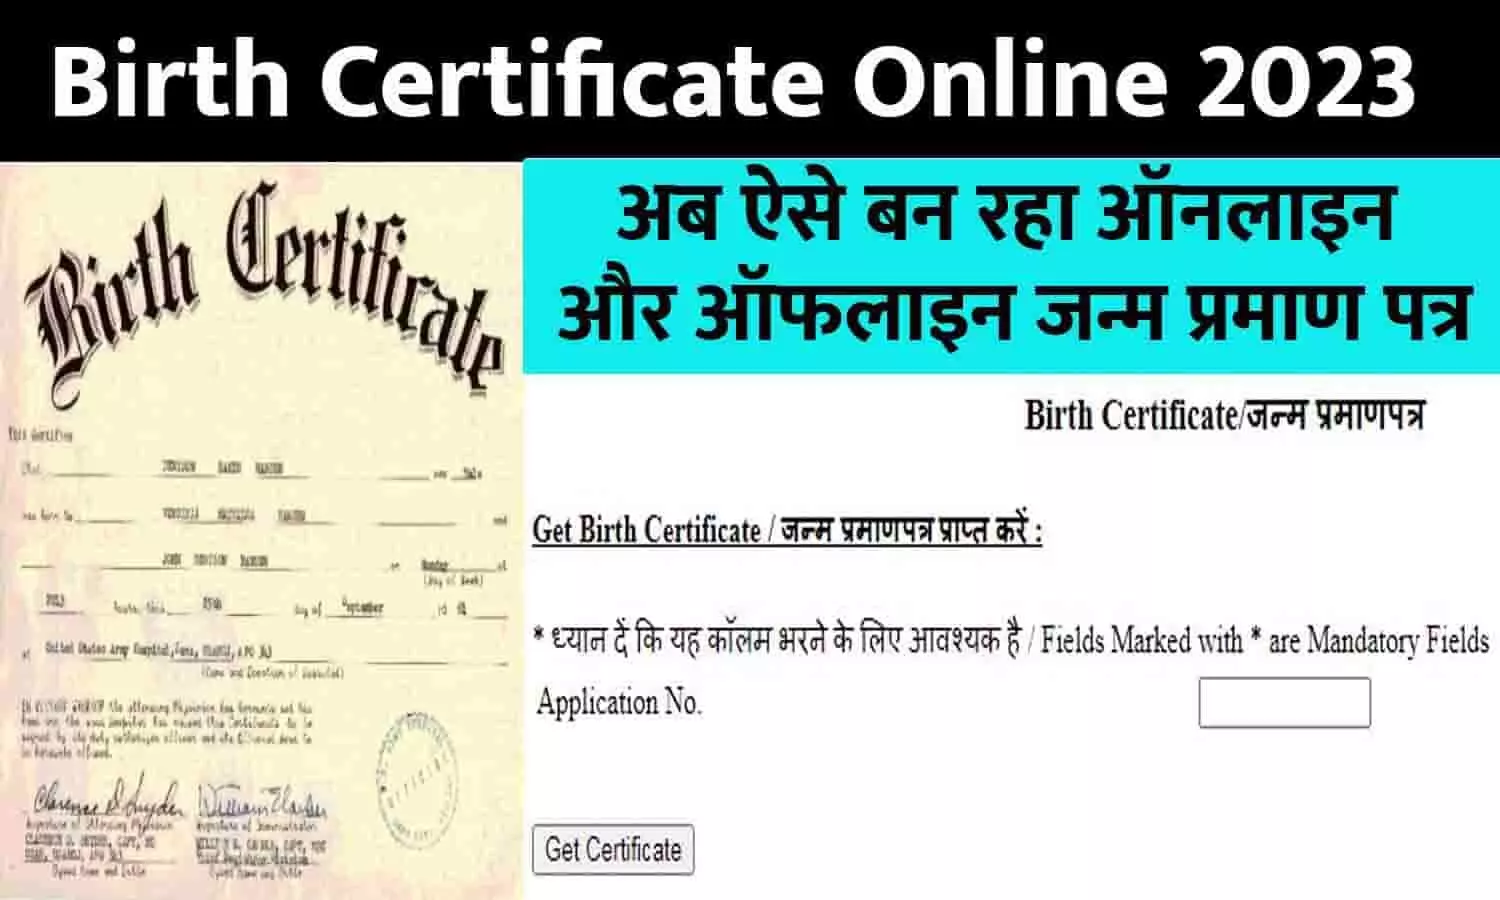 Birth Certificate Online Big Alert 2023: नियमो में बदलाव, अब ऐसे बन रहा ऑनलाइन और ऑफलाइन जन्म प्रमाण पत्र, तुरंत ध्यान दे